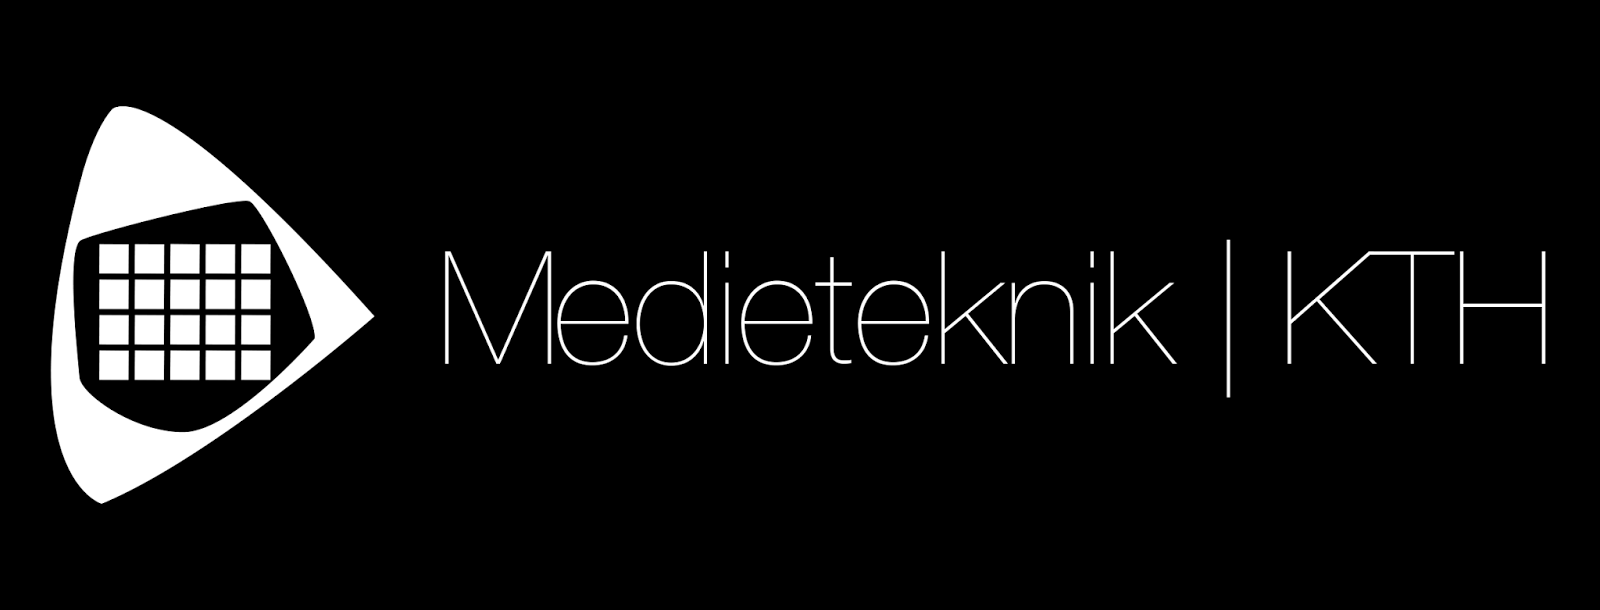 Sektionen för Medieteknik Stockholm 2016-09-23 Styrelsemöte 26 SEPTEMBER 2016 (* betyder att bilaga finns) 1. Formalia 1.1. Mötets öppnande 1.2. Mötets behöriga utlysande 1.3. Närvarande och frånvarande 1.